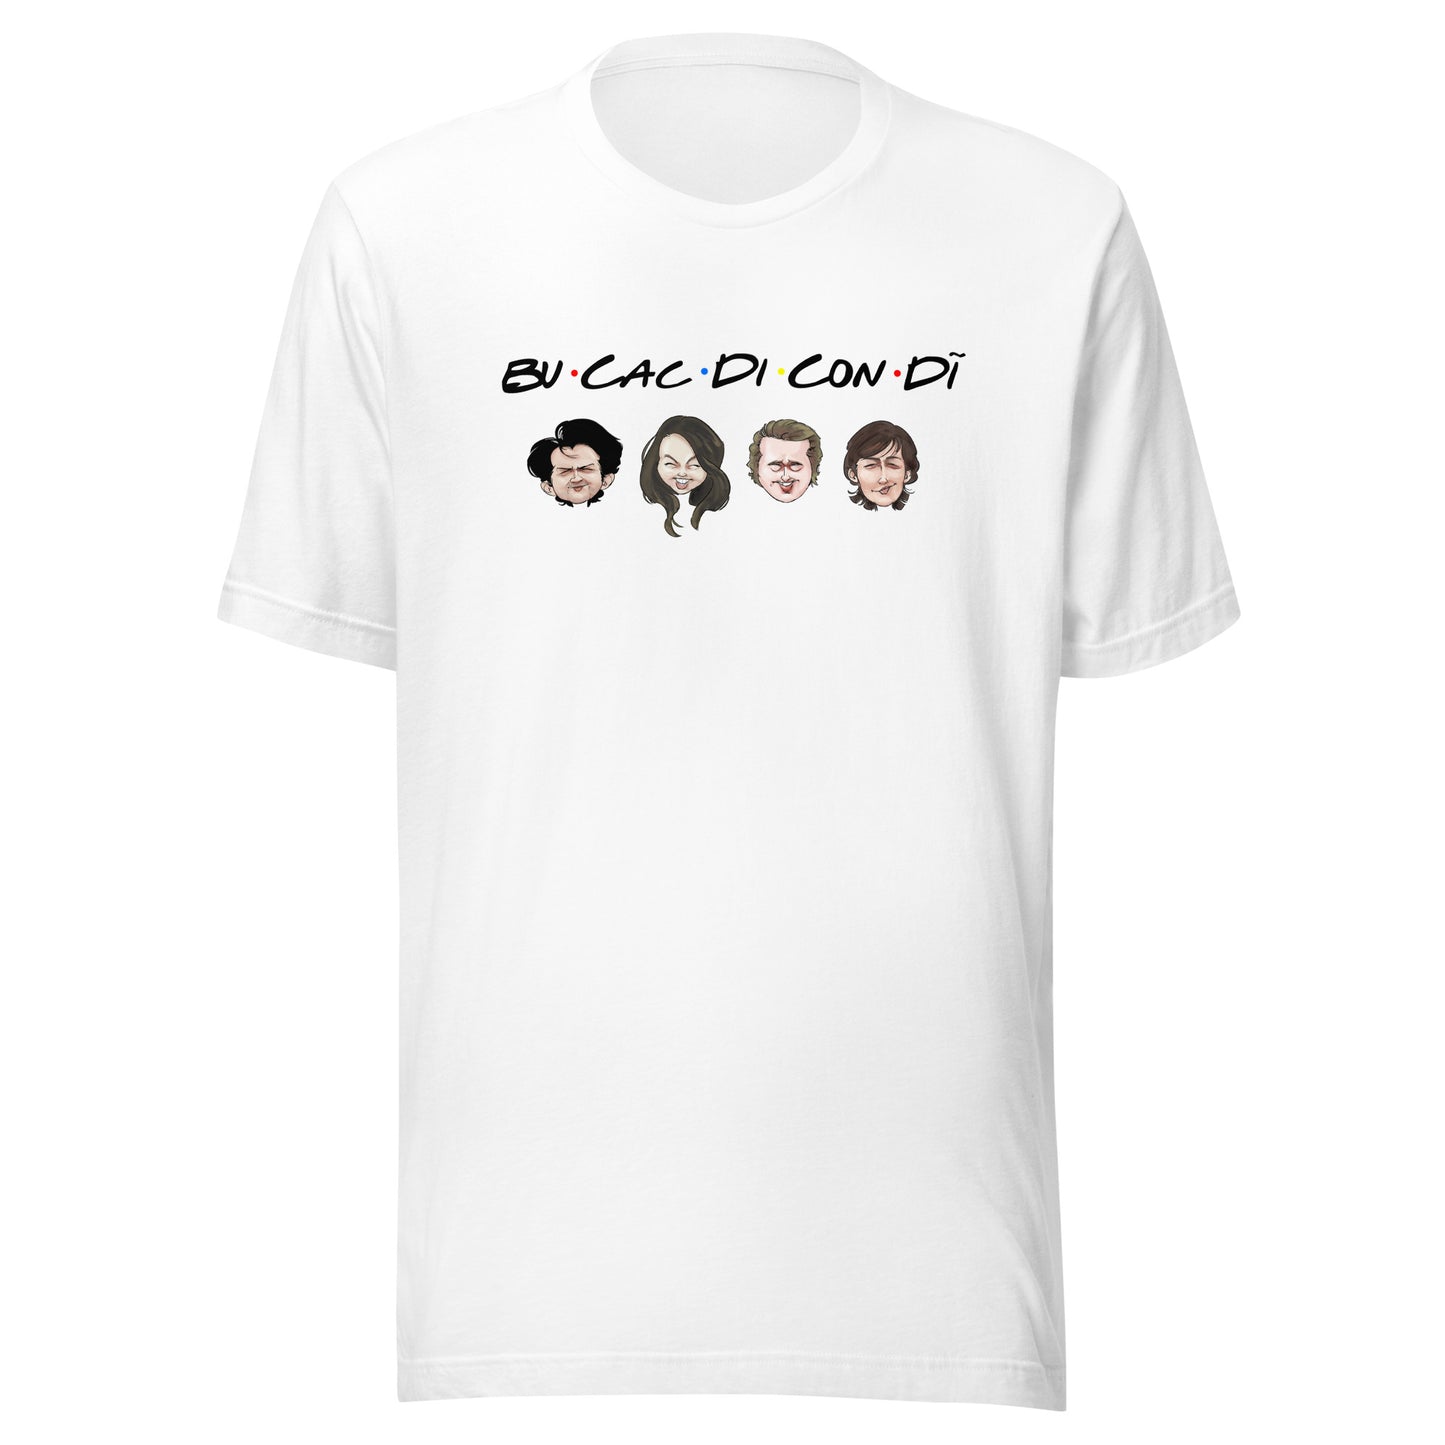 Bucacdicondi Unisex T-shirt (White)